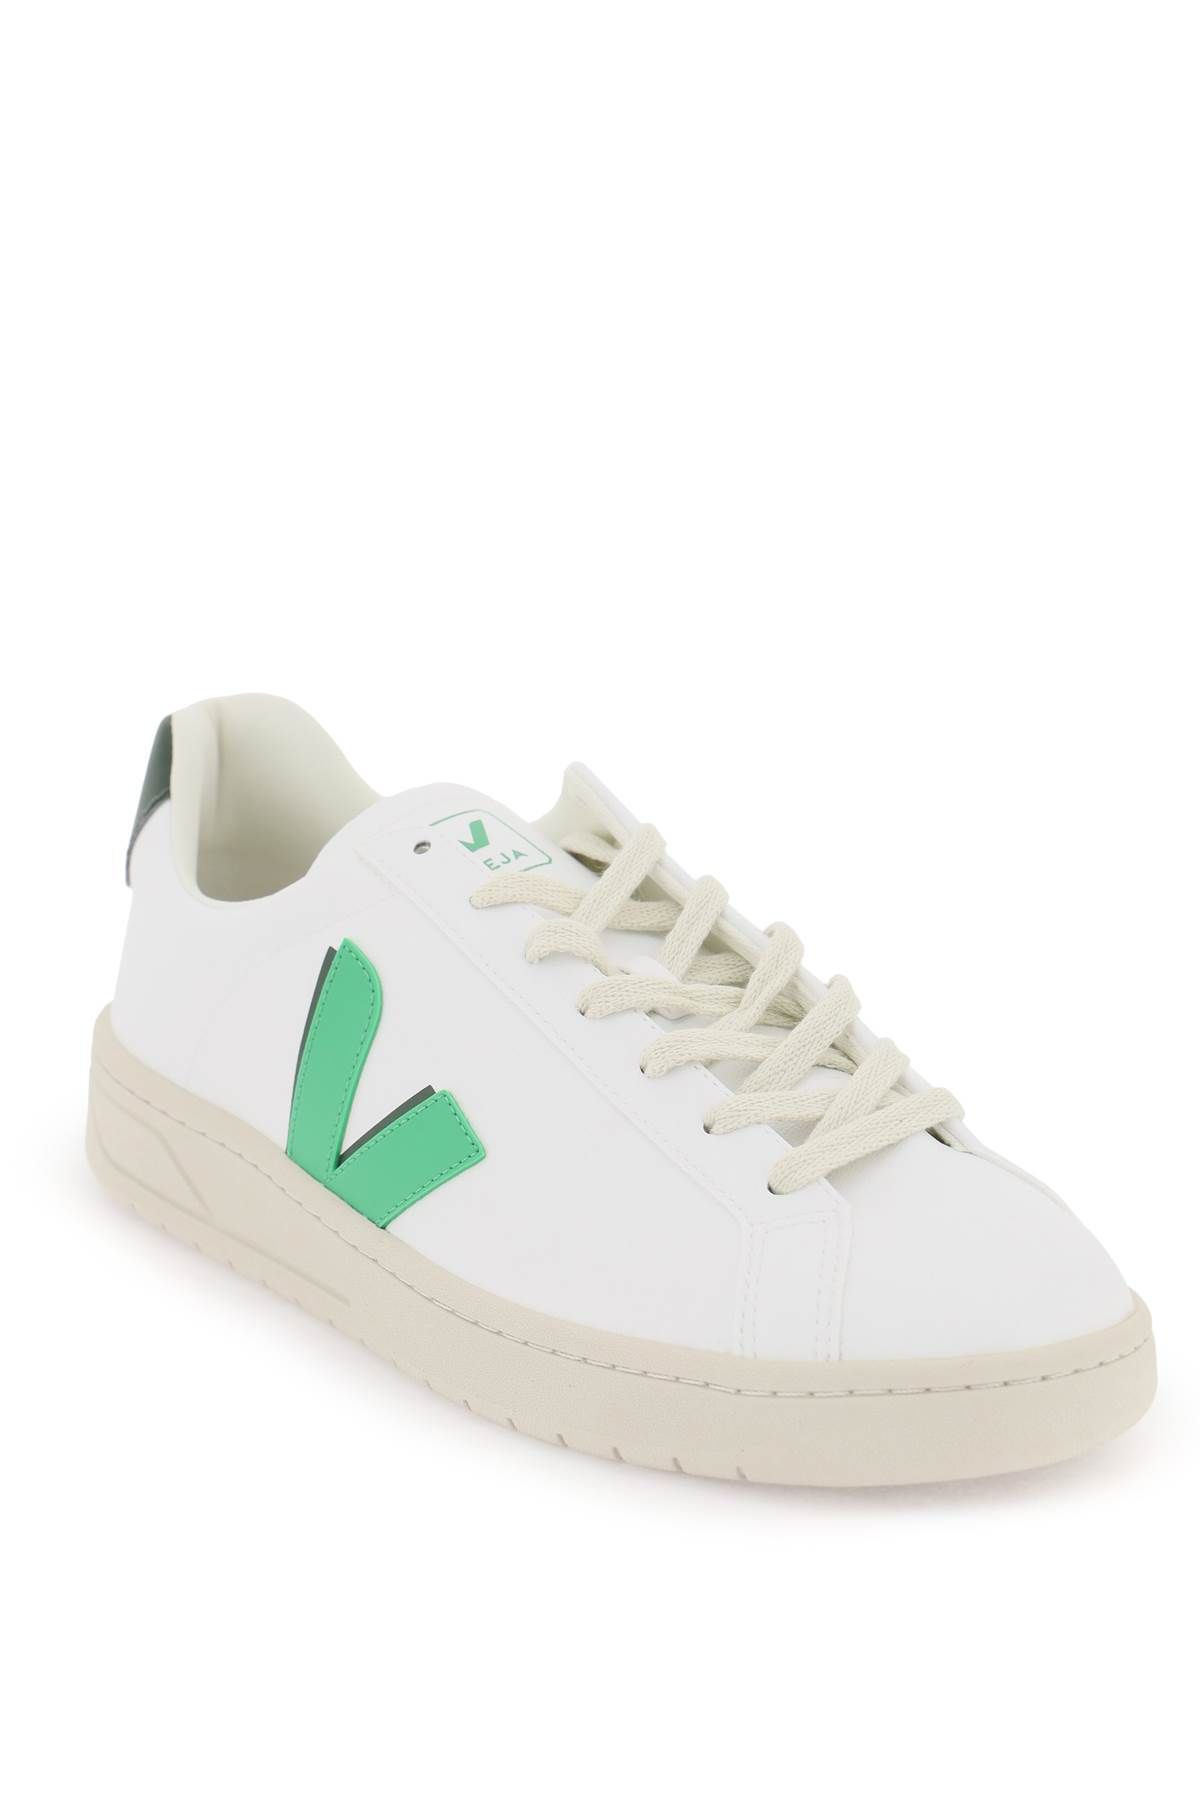 Shop Veja C.w.l. Urca Vegan Sneakers In White,green